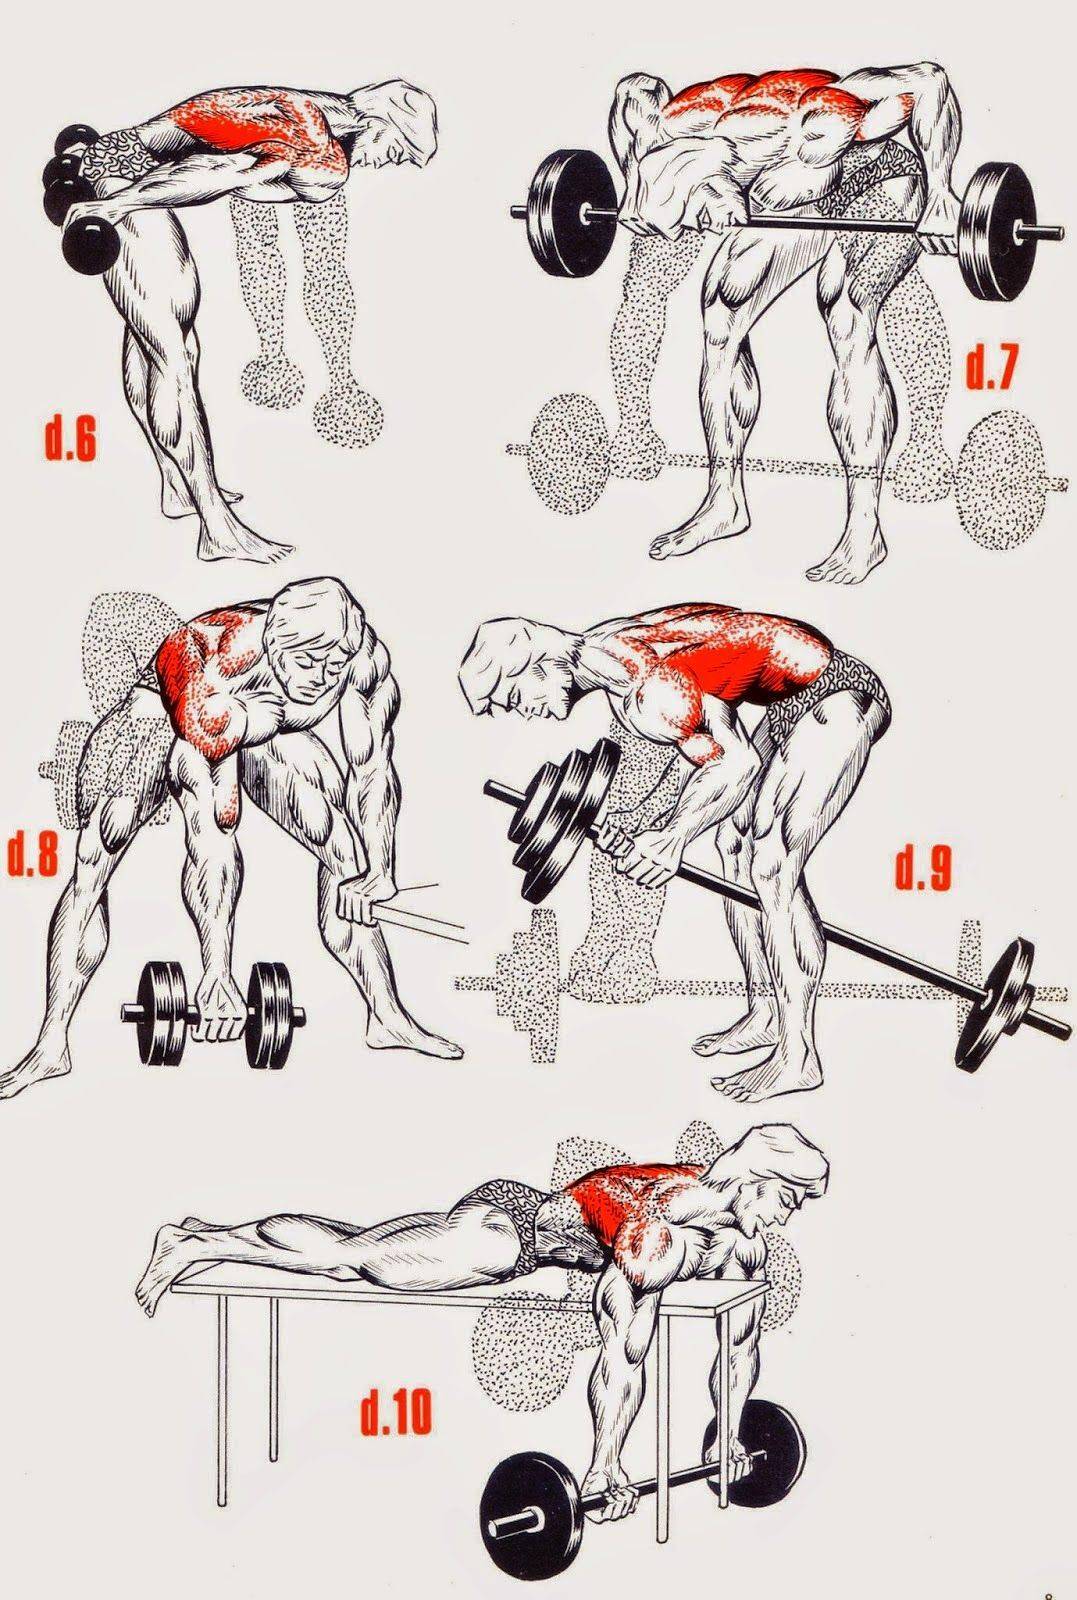 Как накачать мышцы: основные принципы и правила для набора мышечной массы